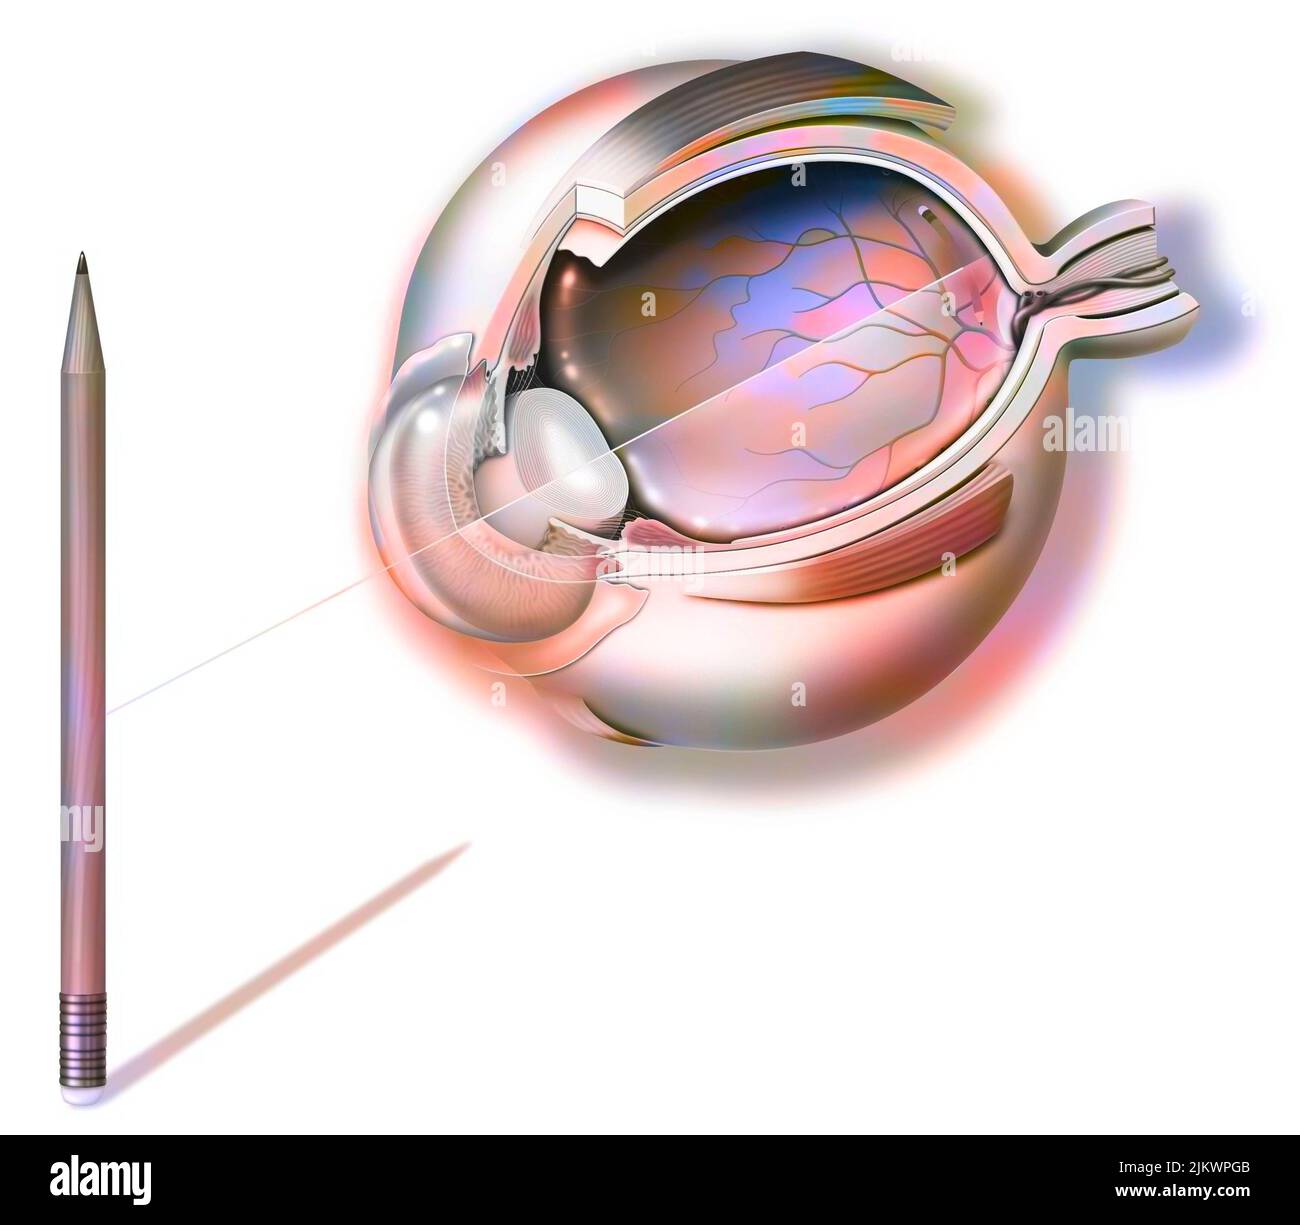 Anatomia di un occhio e visione, matita riflessione sulla retina. Foto Stock